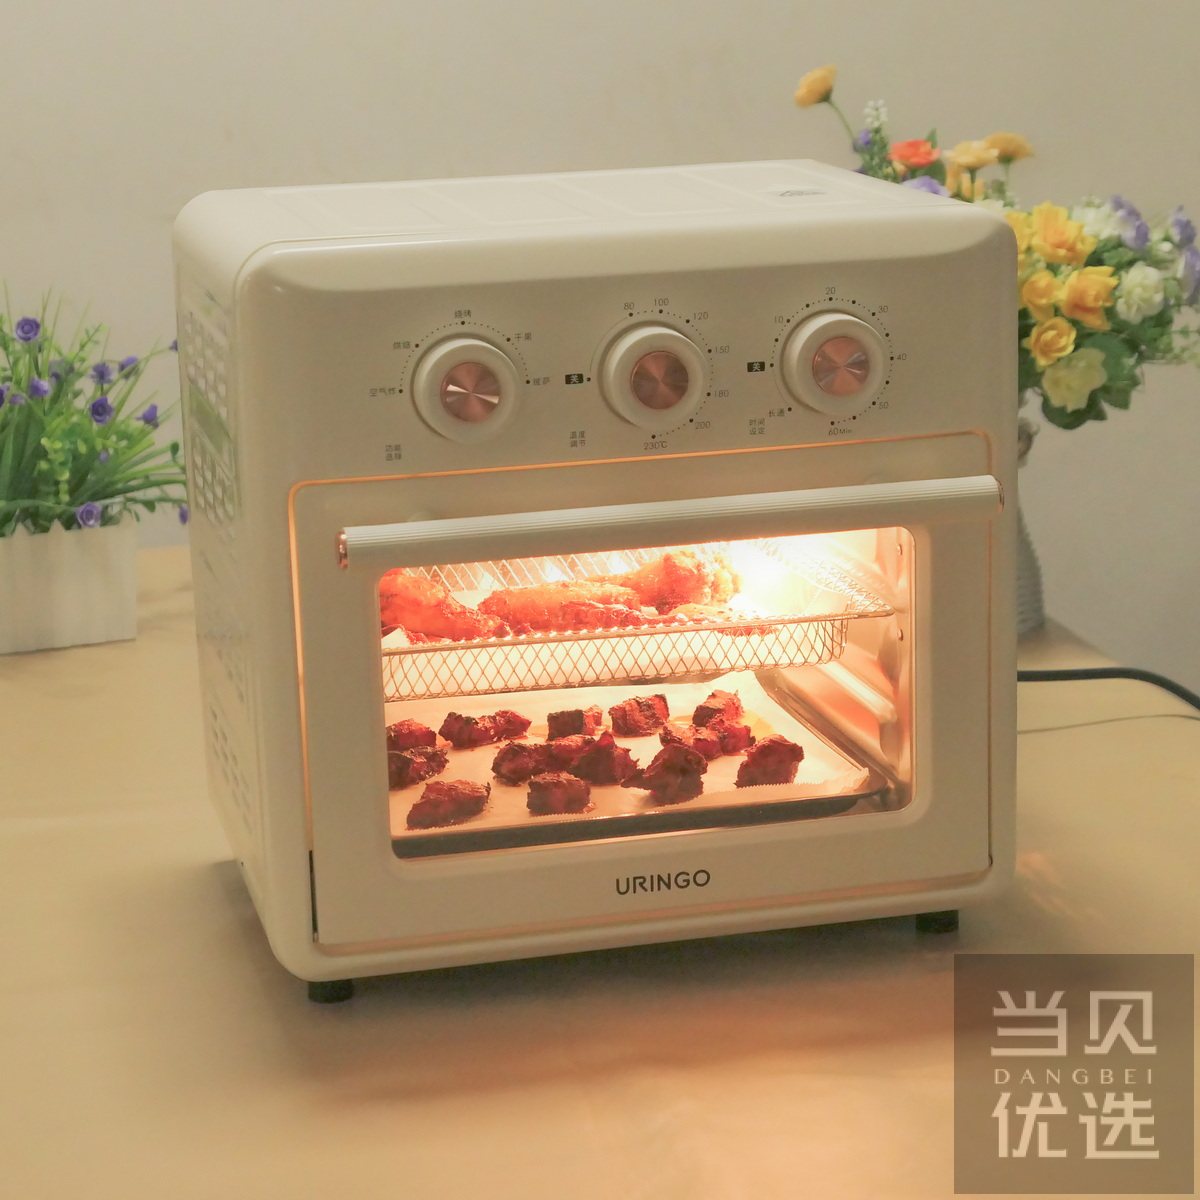 上海丽麦工厂直销双层四盘电烤箱 两层四盘食品烘焙电烤炉-阿里巴巴